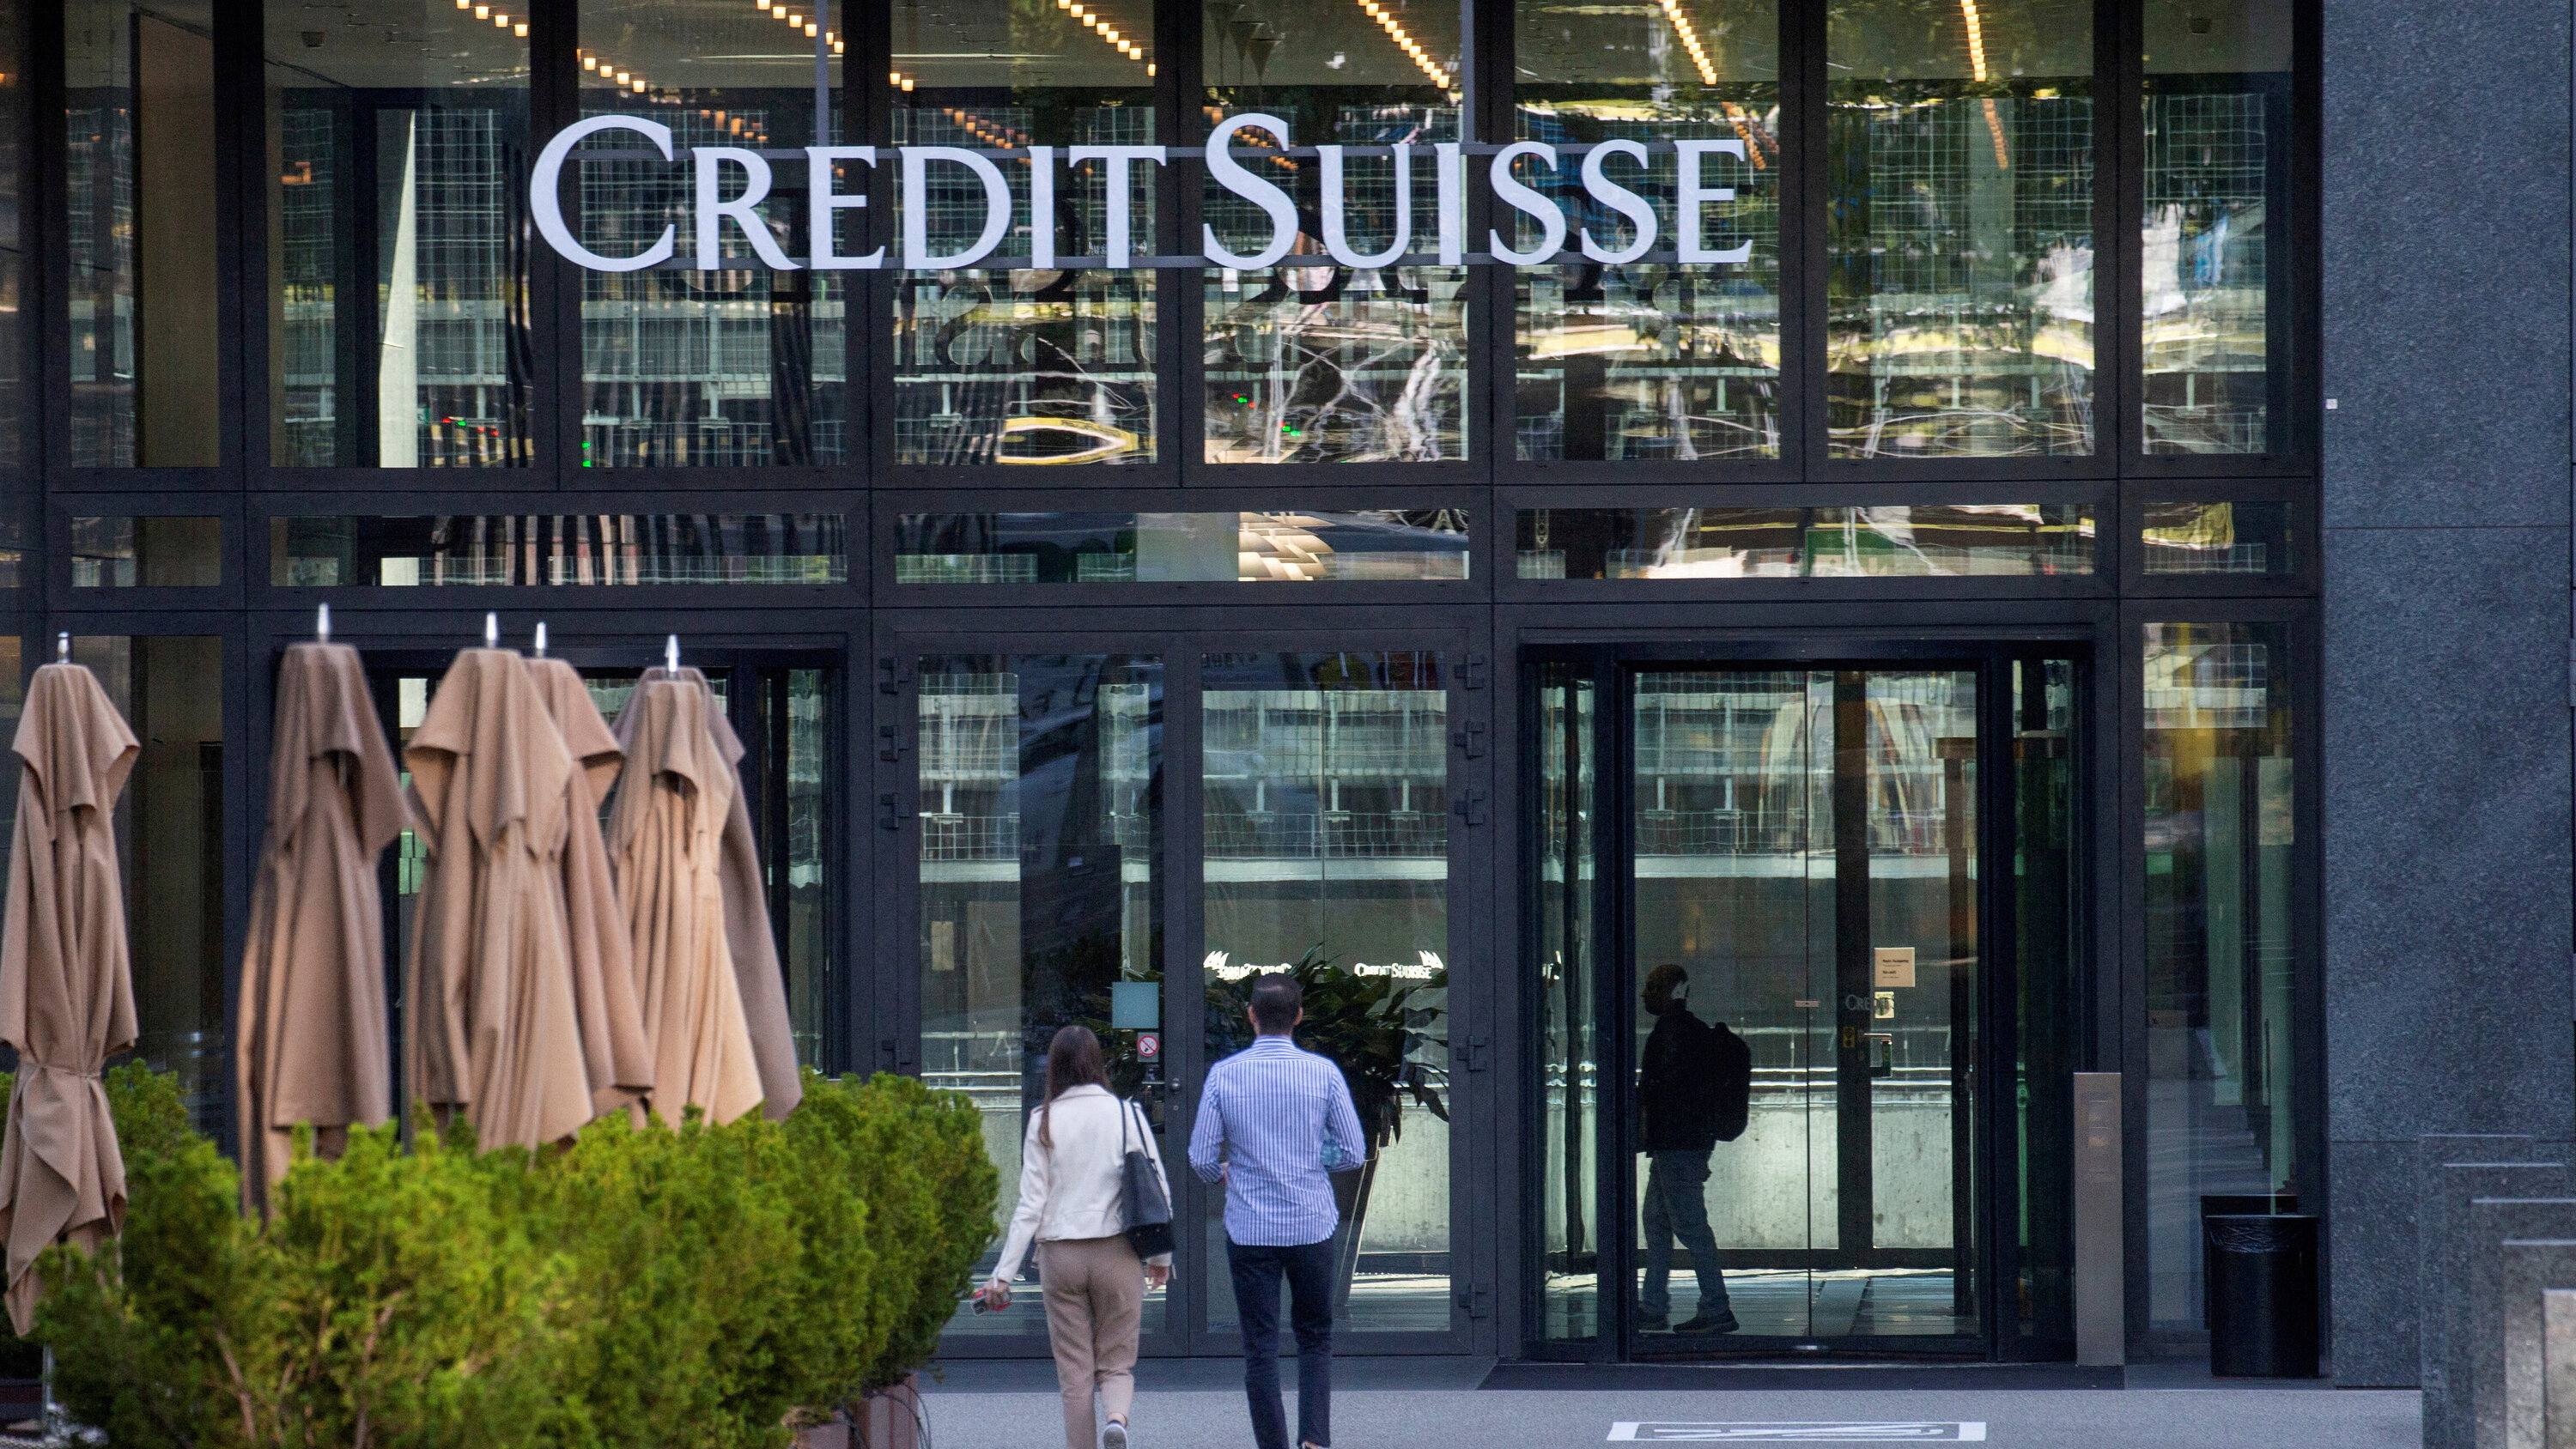 سويسرا تخصص نحو 260 مليار فرنك لإنقاذ بنك كريدي سويس